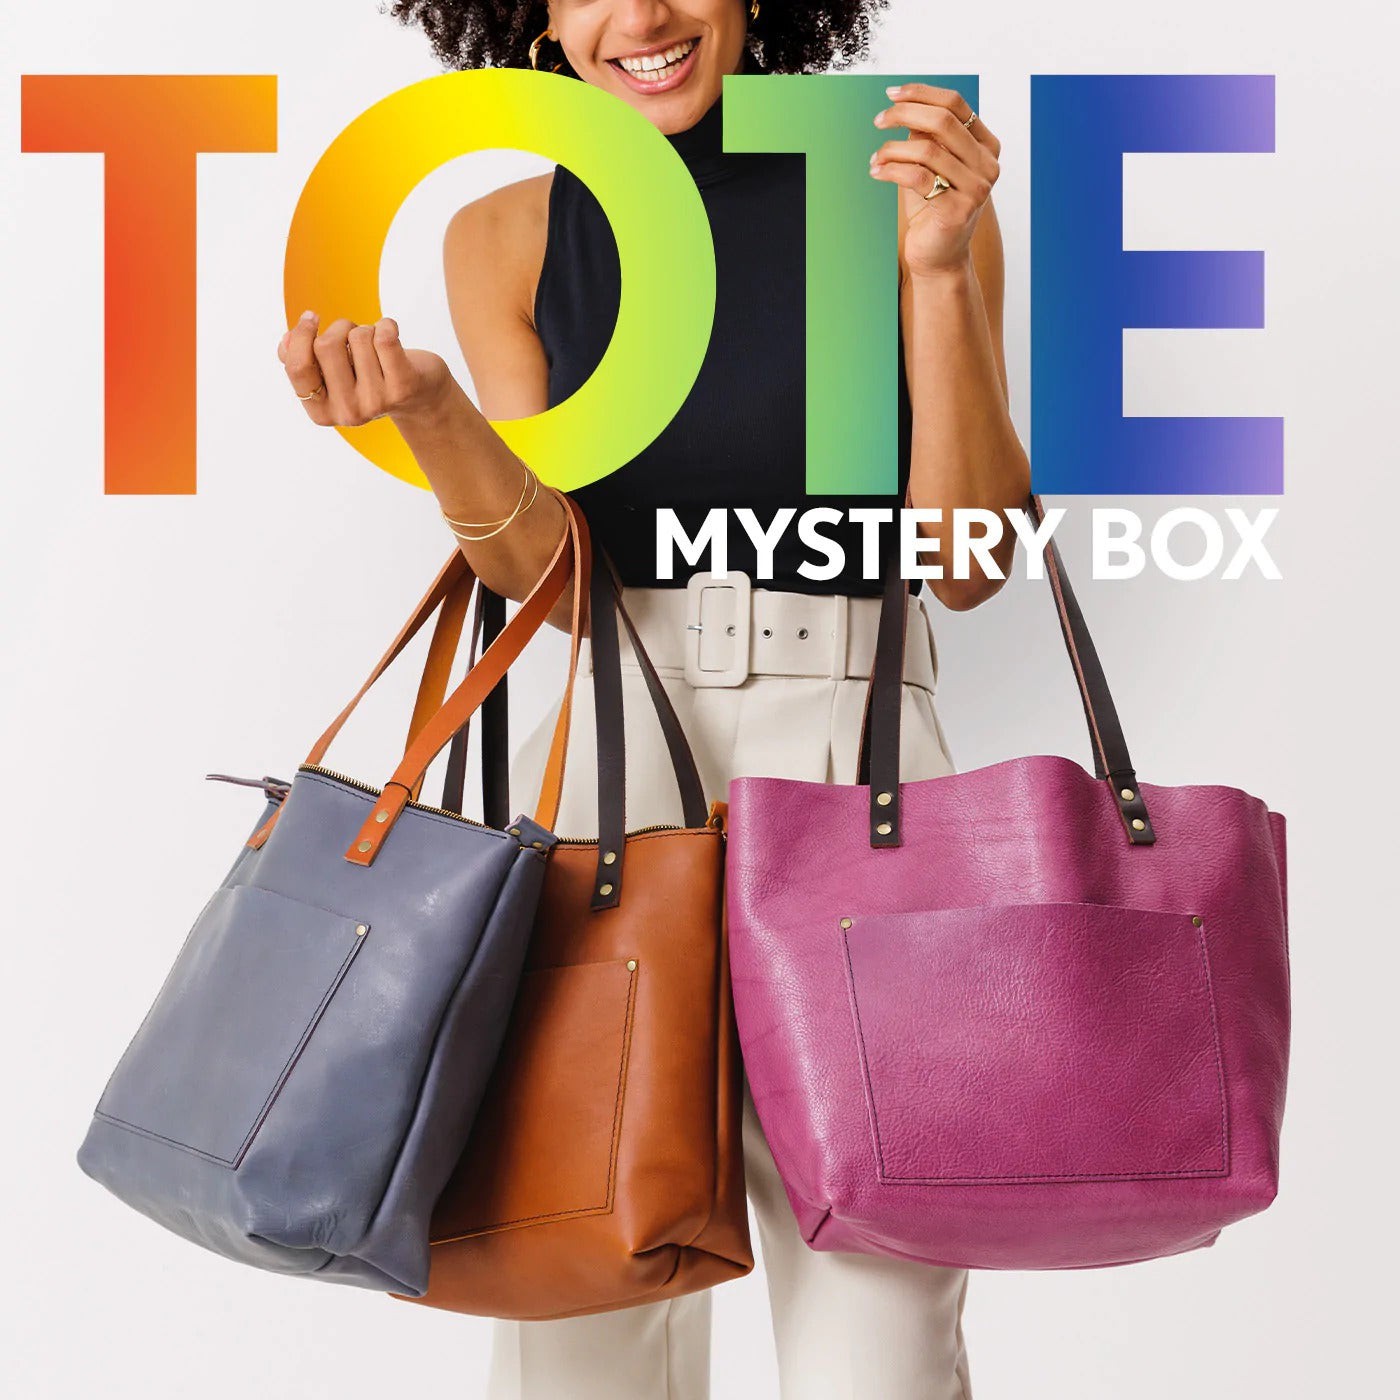 Handbags & wallets, Not So Mystery Box